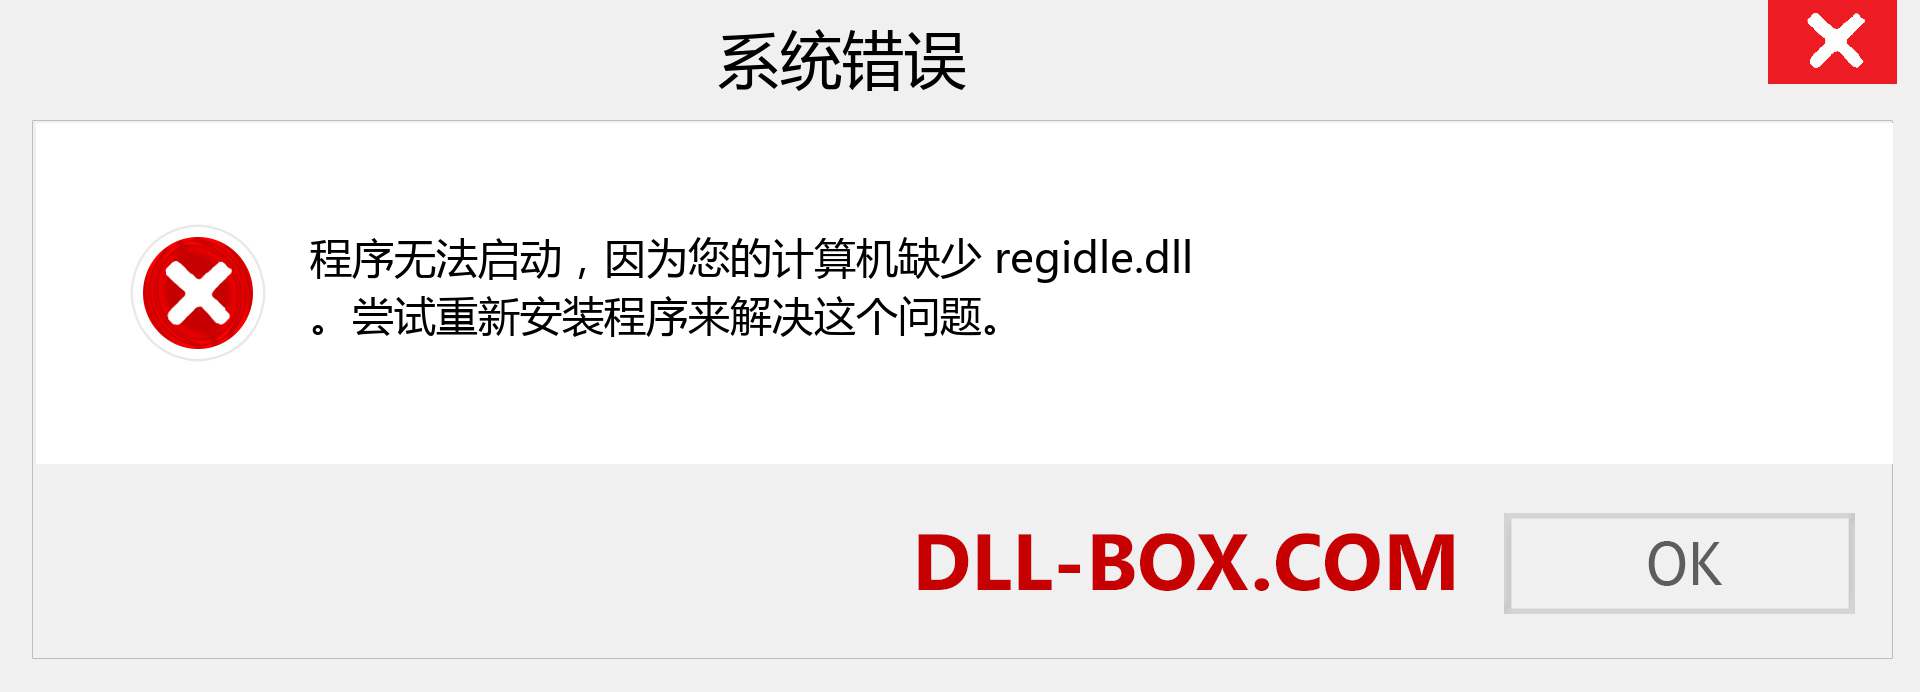 regidle.dll 文件丢失？。 适用于 Windows 7、8、10 的下载 - 修复 Windows、照片、图像上的 regidle dll 丢失错误